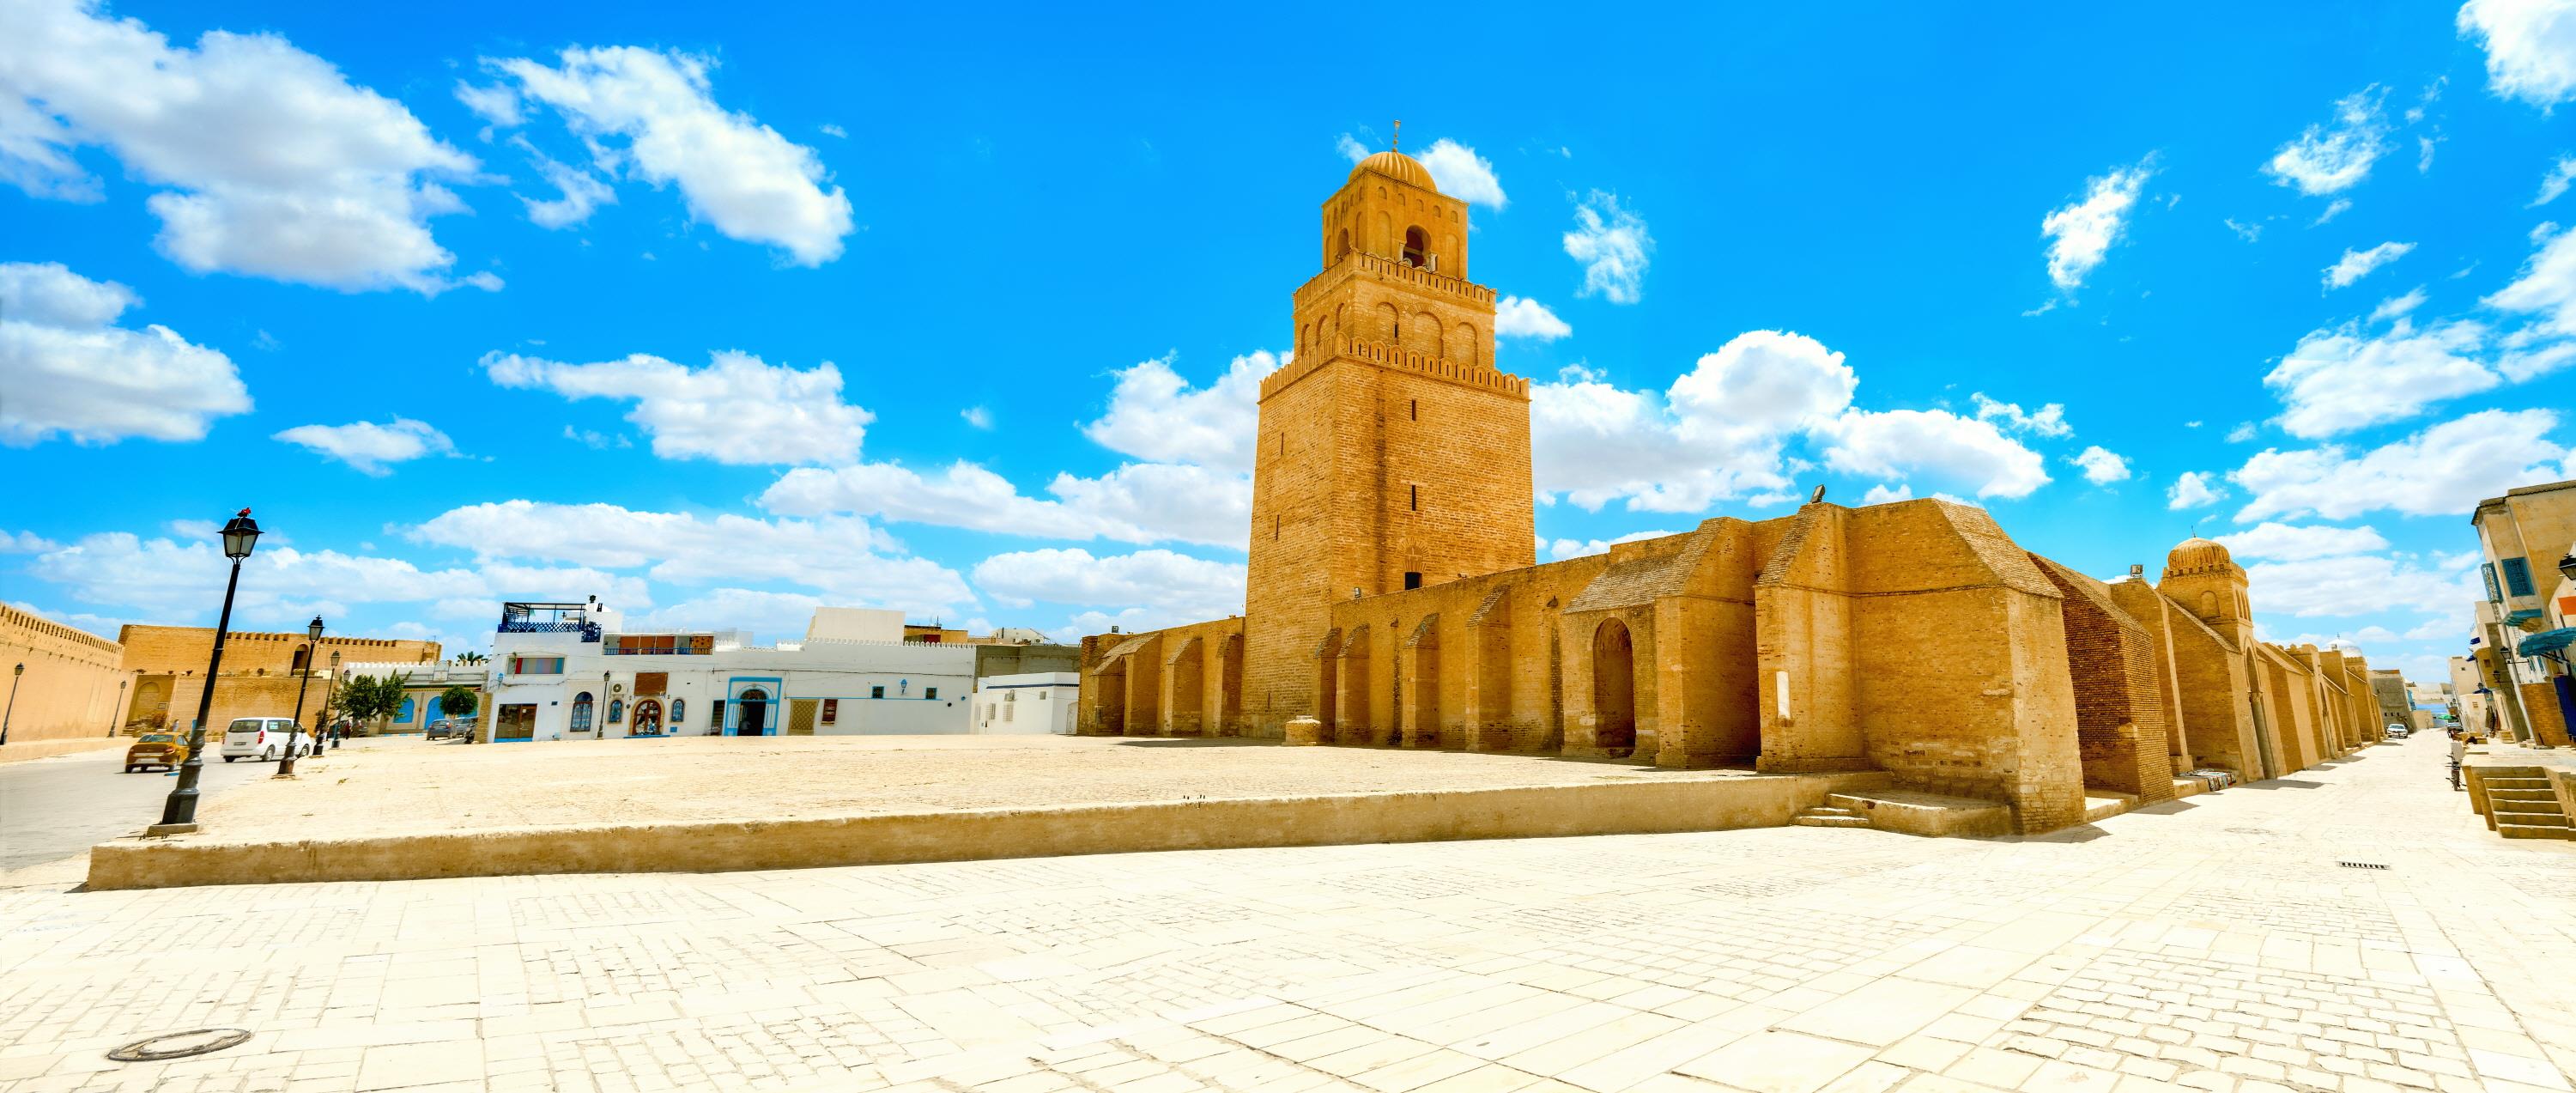 그레이트 모스크  Great Mosque of Kairouan